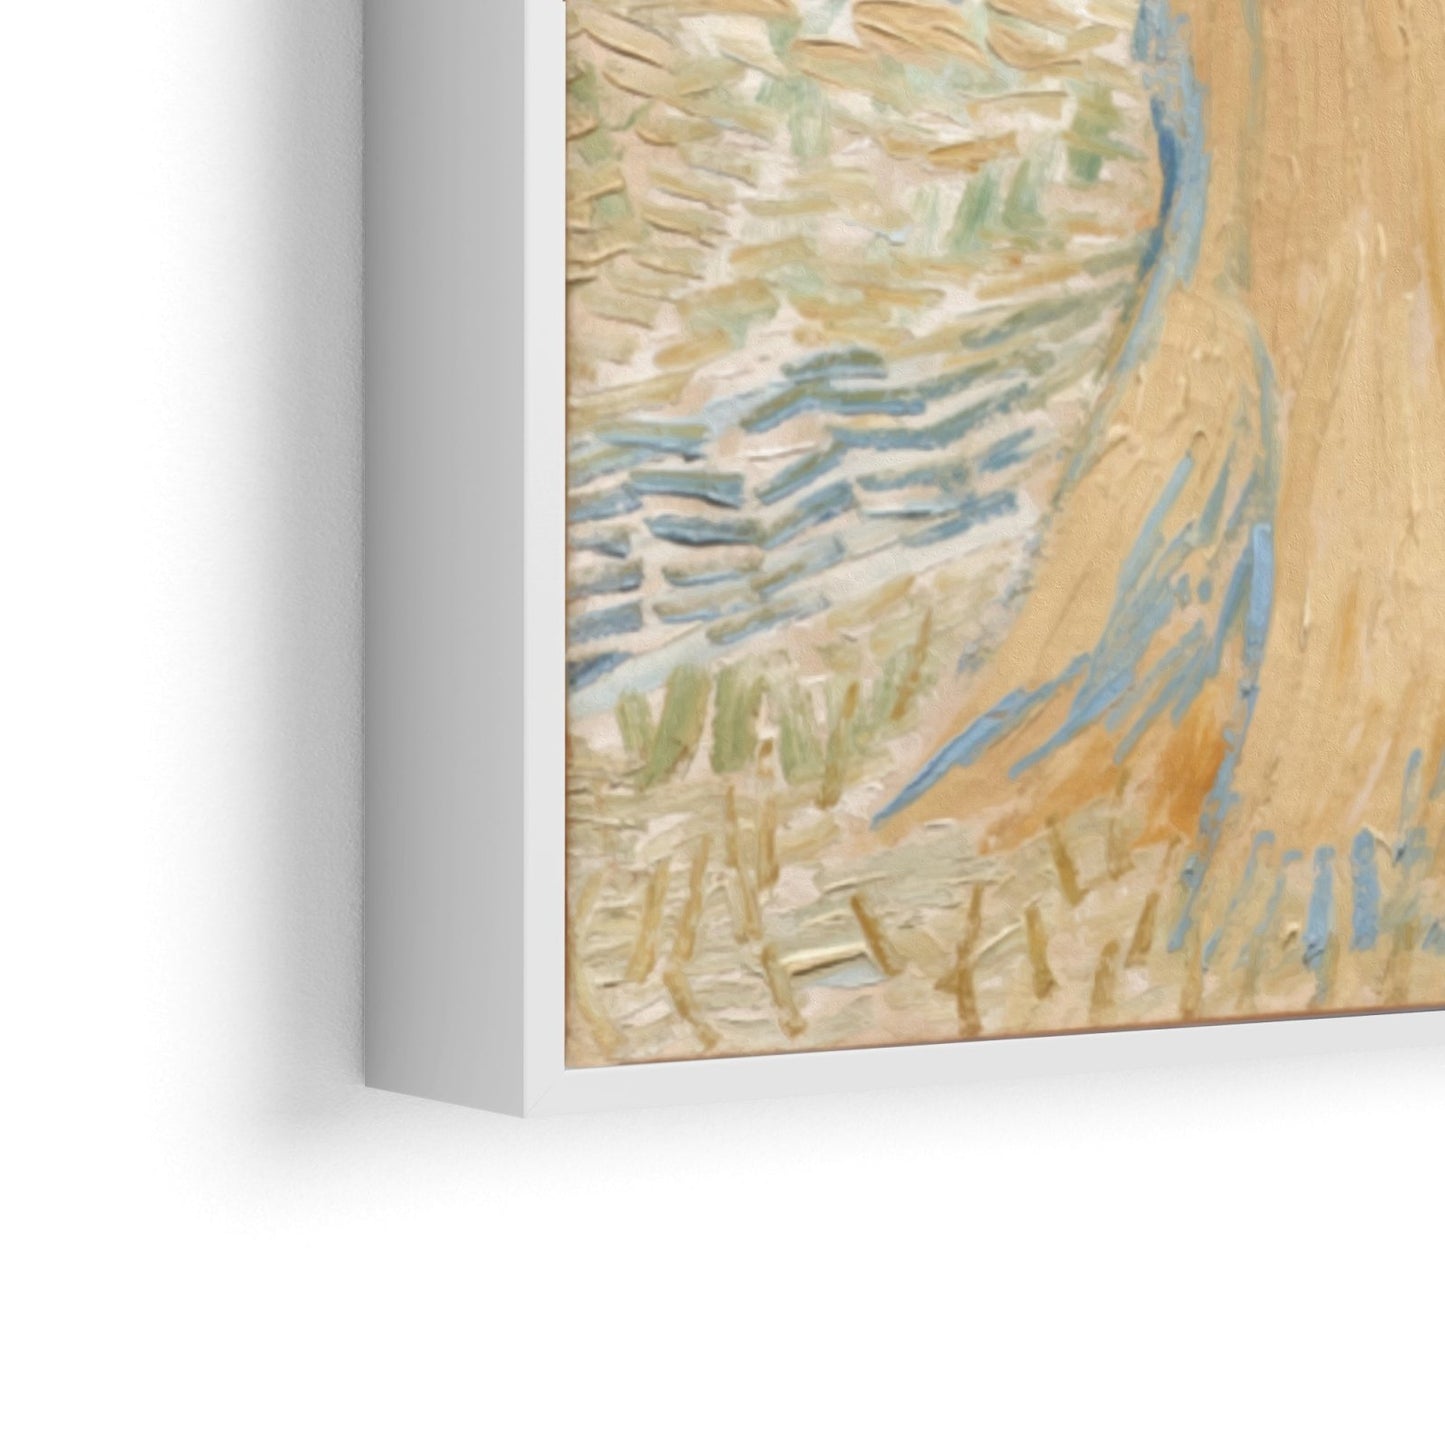 Weizengarben, Vincent Van Gogh